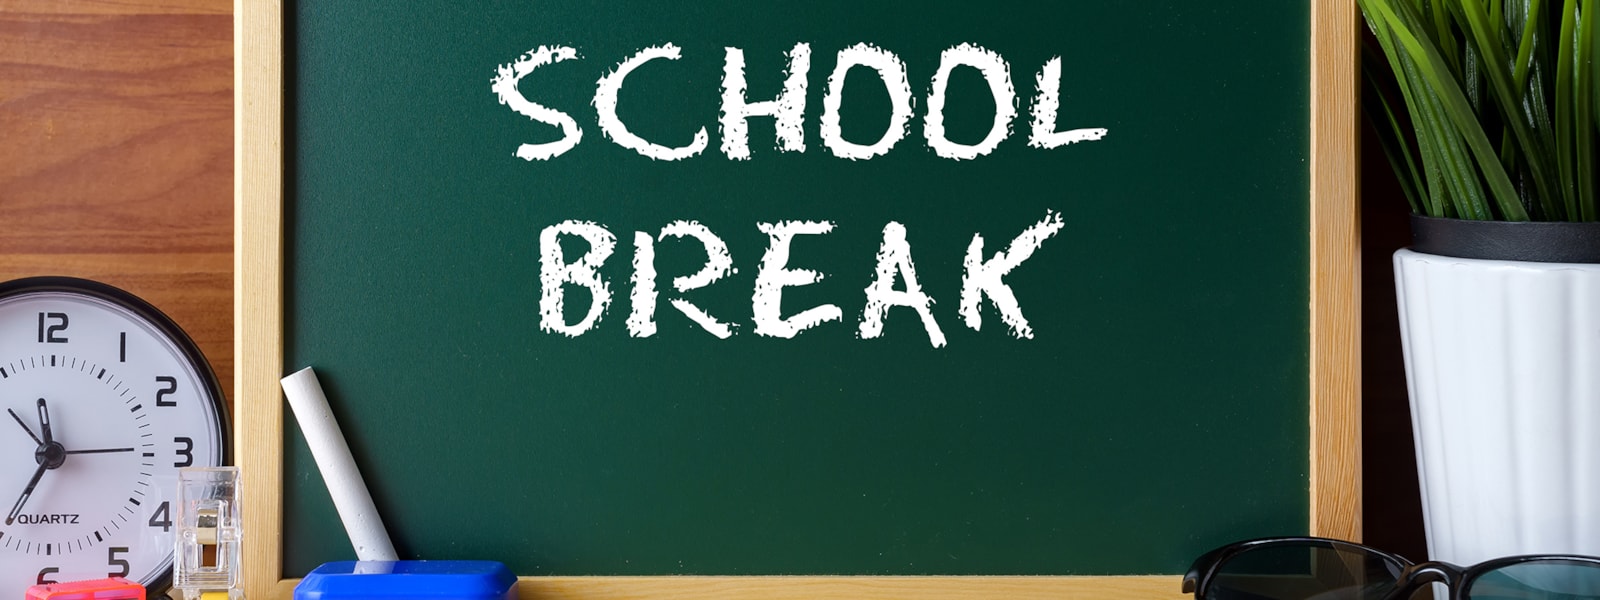 school break written on chalkboard with school supplies